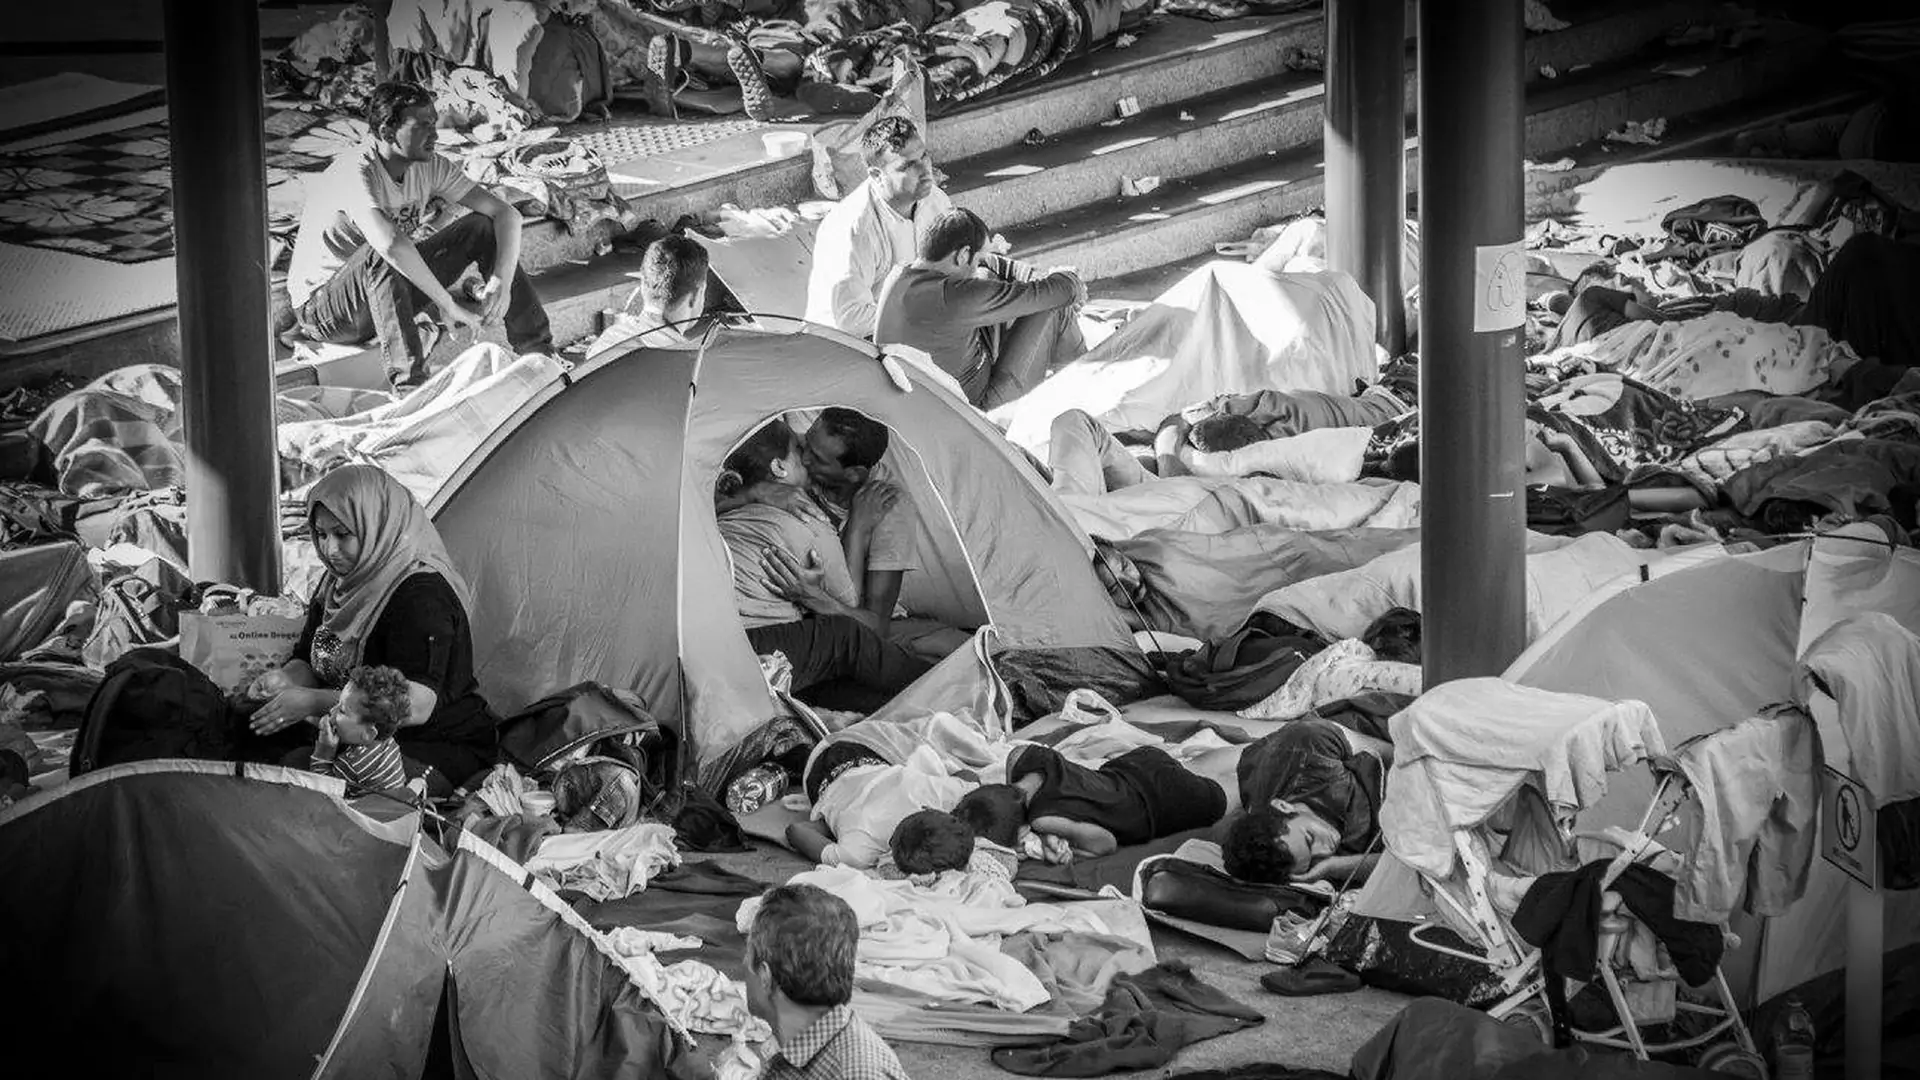 Poruszający moment uchwycony w kadrze. To 1 zdjęcie z obozu uchodźców naprawdę wyraża więcej niż 1000 słów